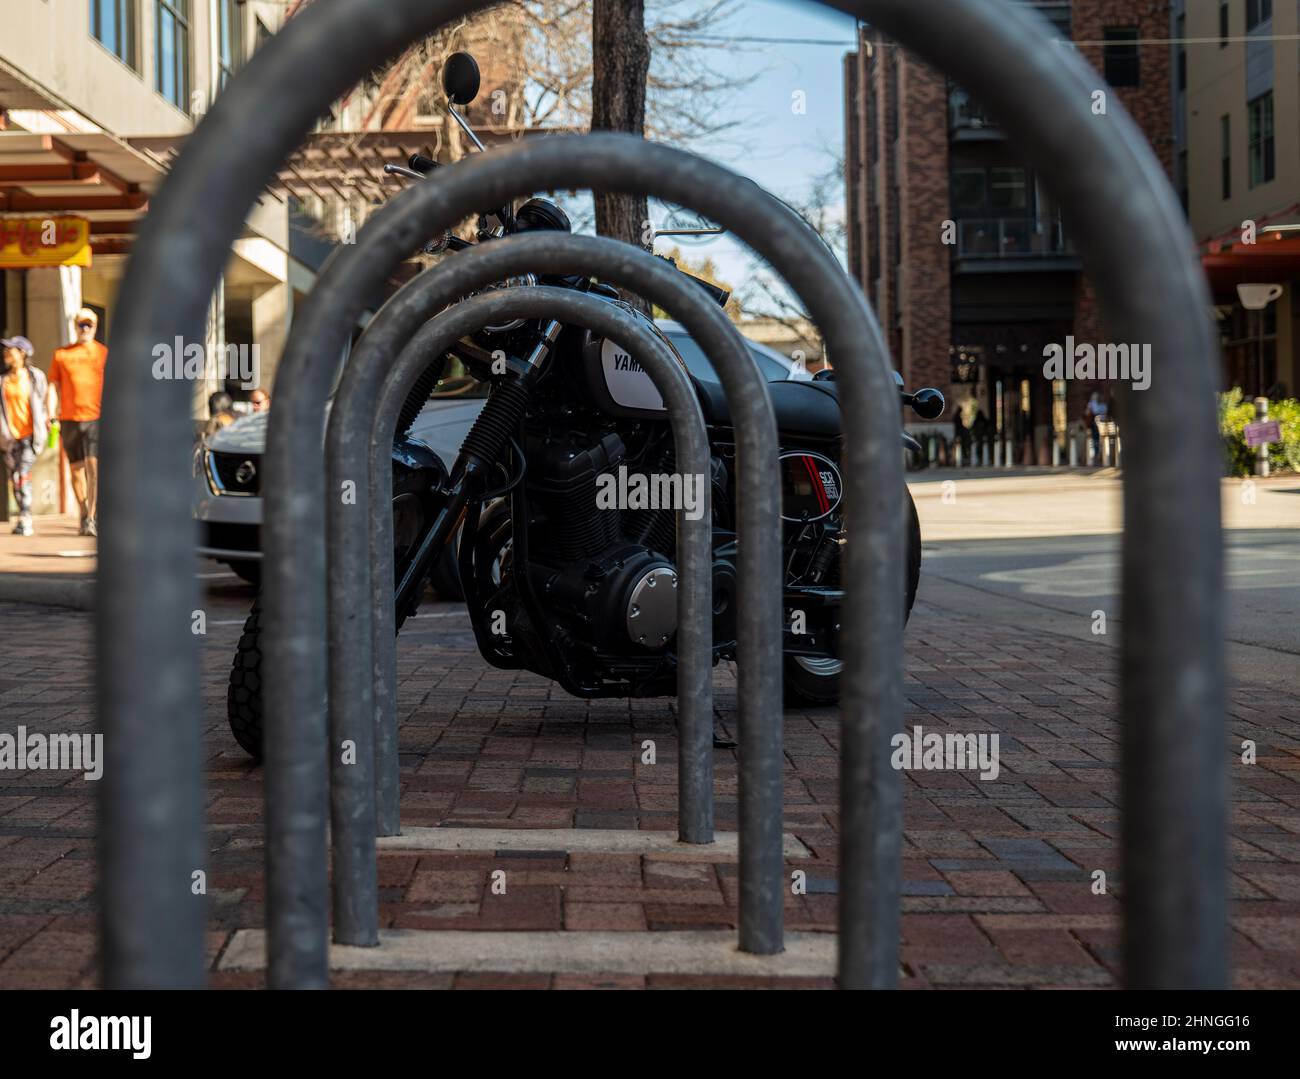 SAN ANTONIO, TX 24 JANV. 2020: Porte-vélos en métal et moto Yamaha noire sur la rue de la ville. Banque D'Images